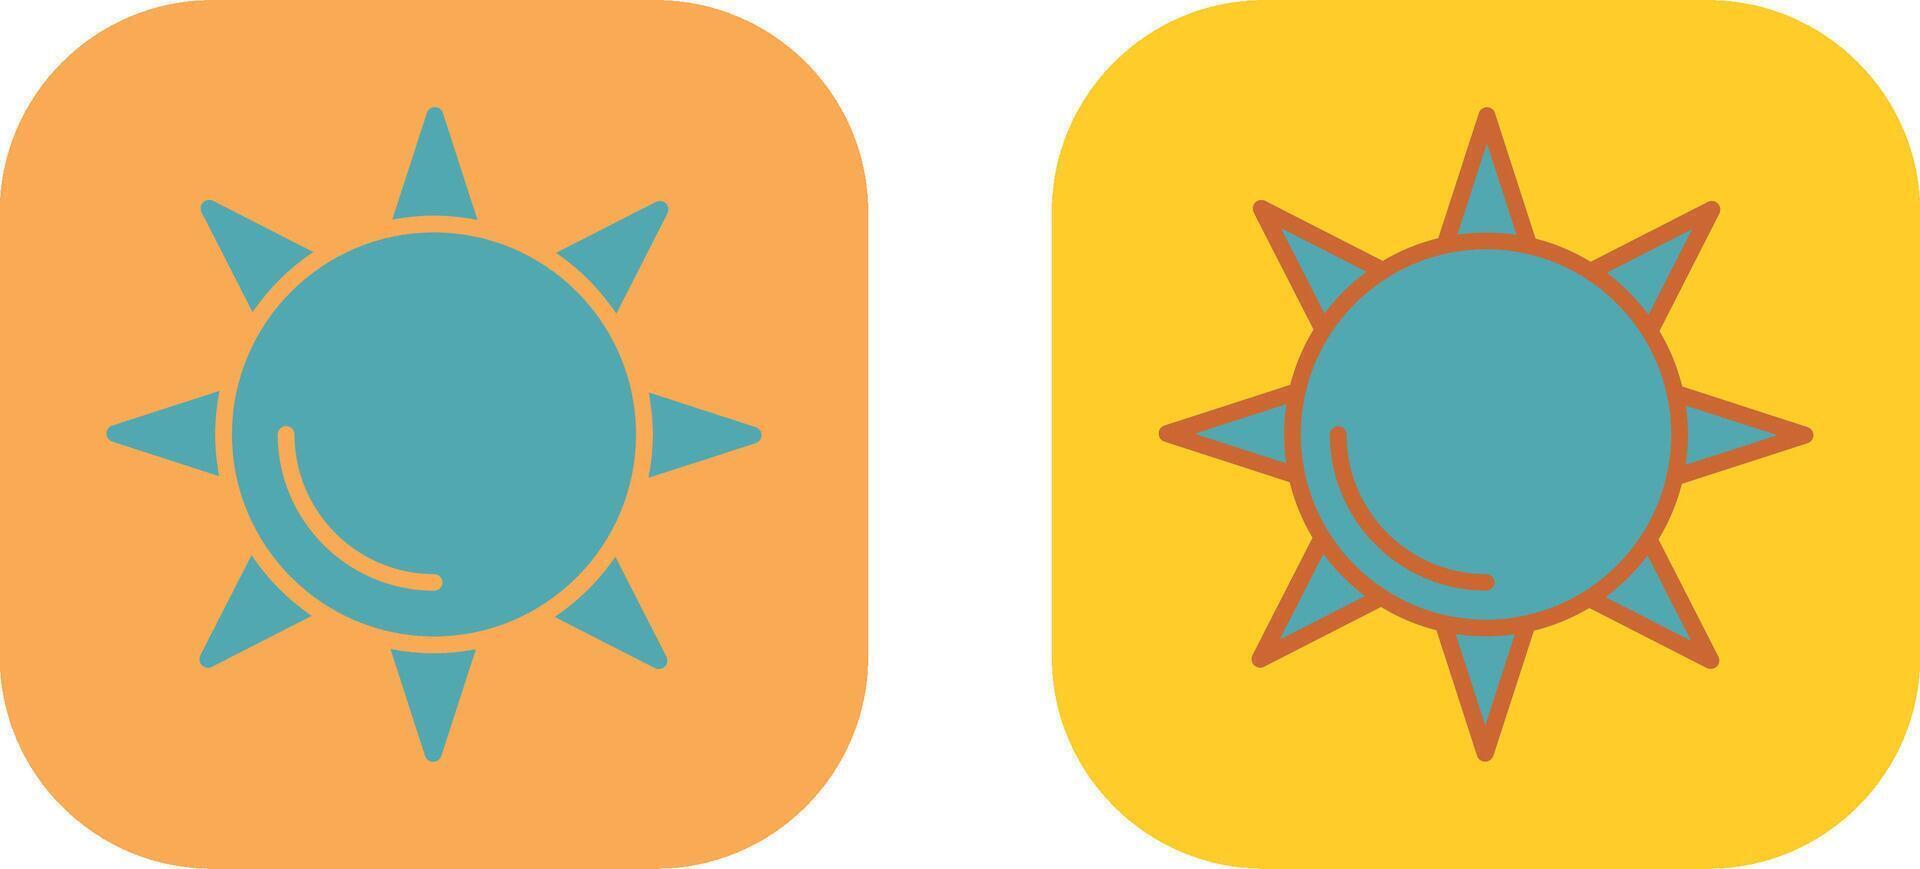 zon pictogram ontwerp vector